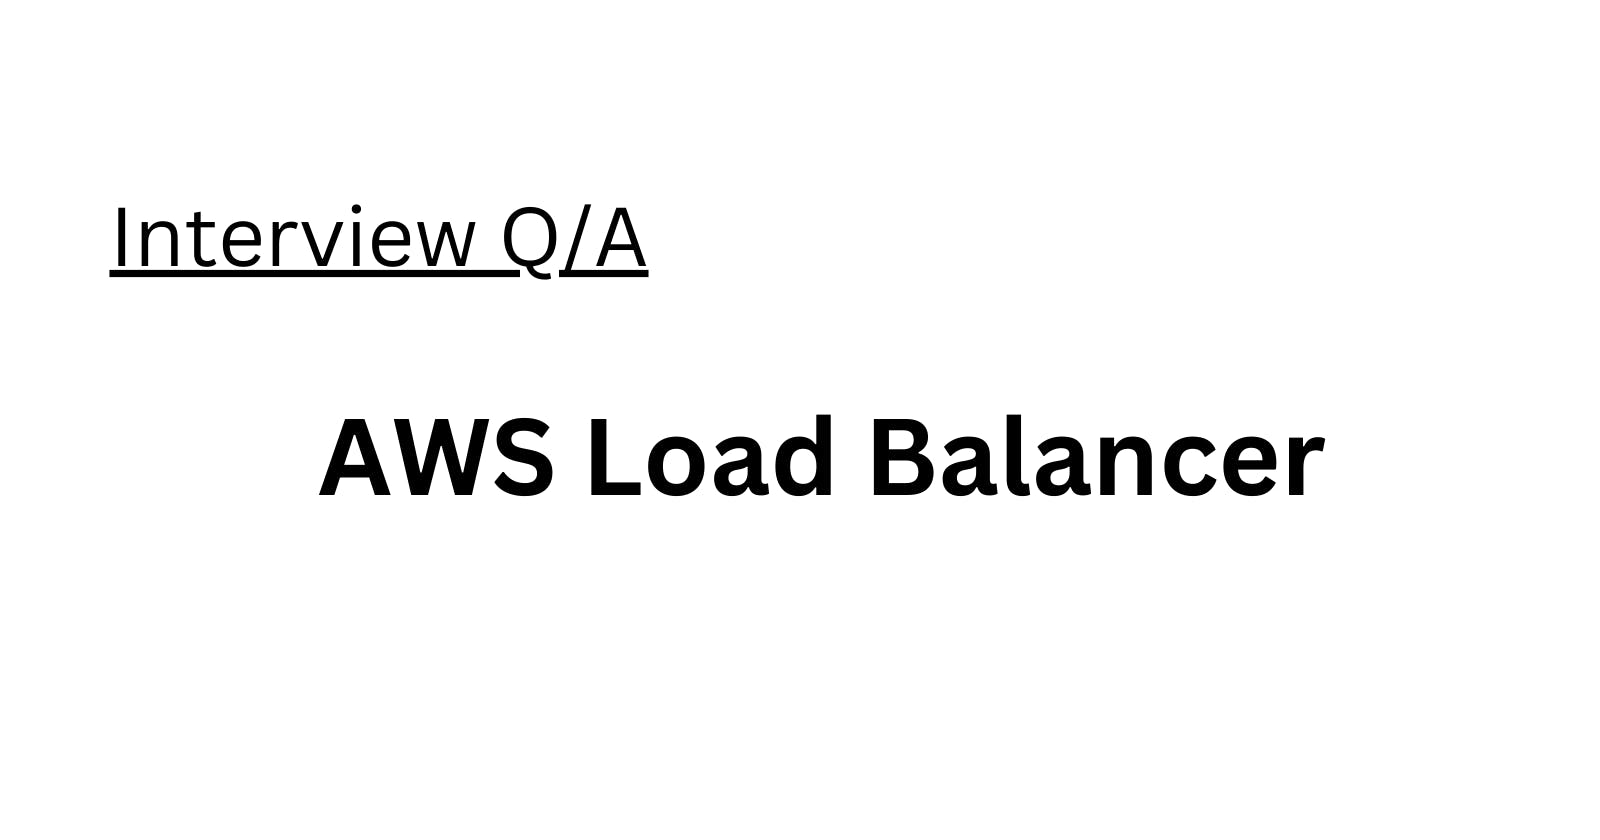 AWS Load Balancer Interview Q/A